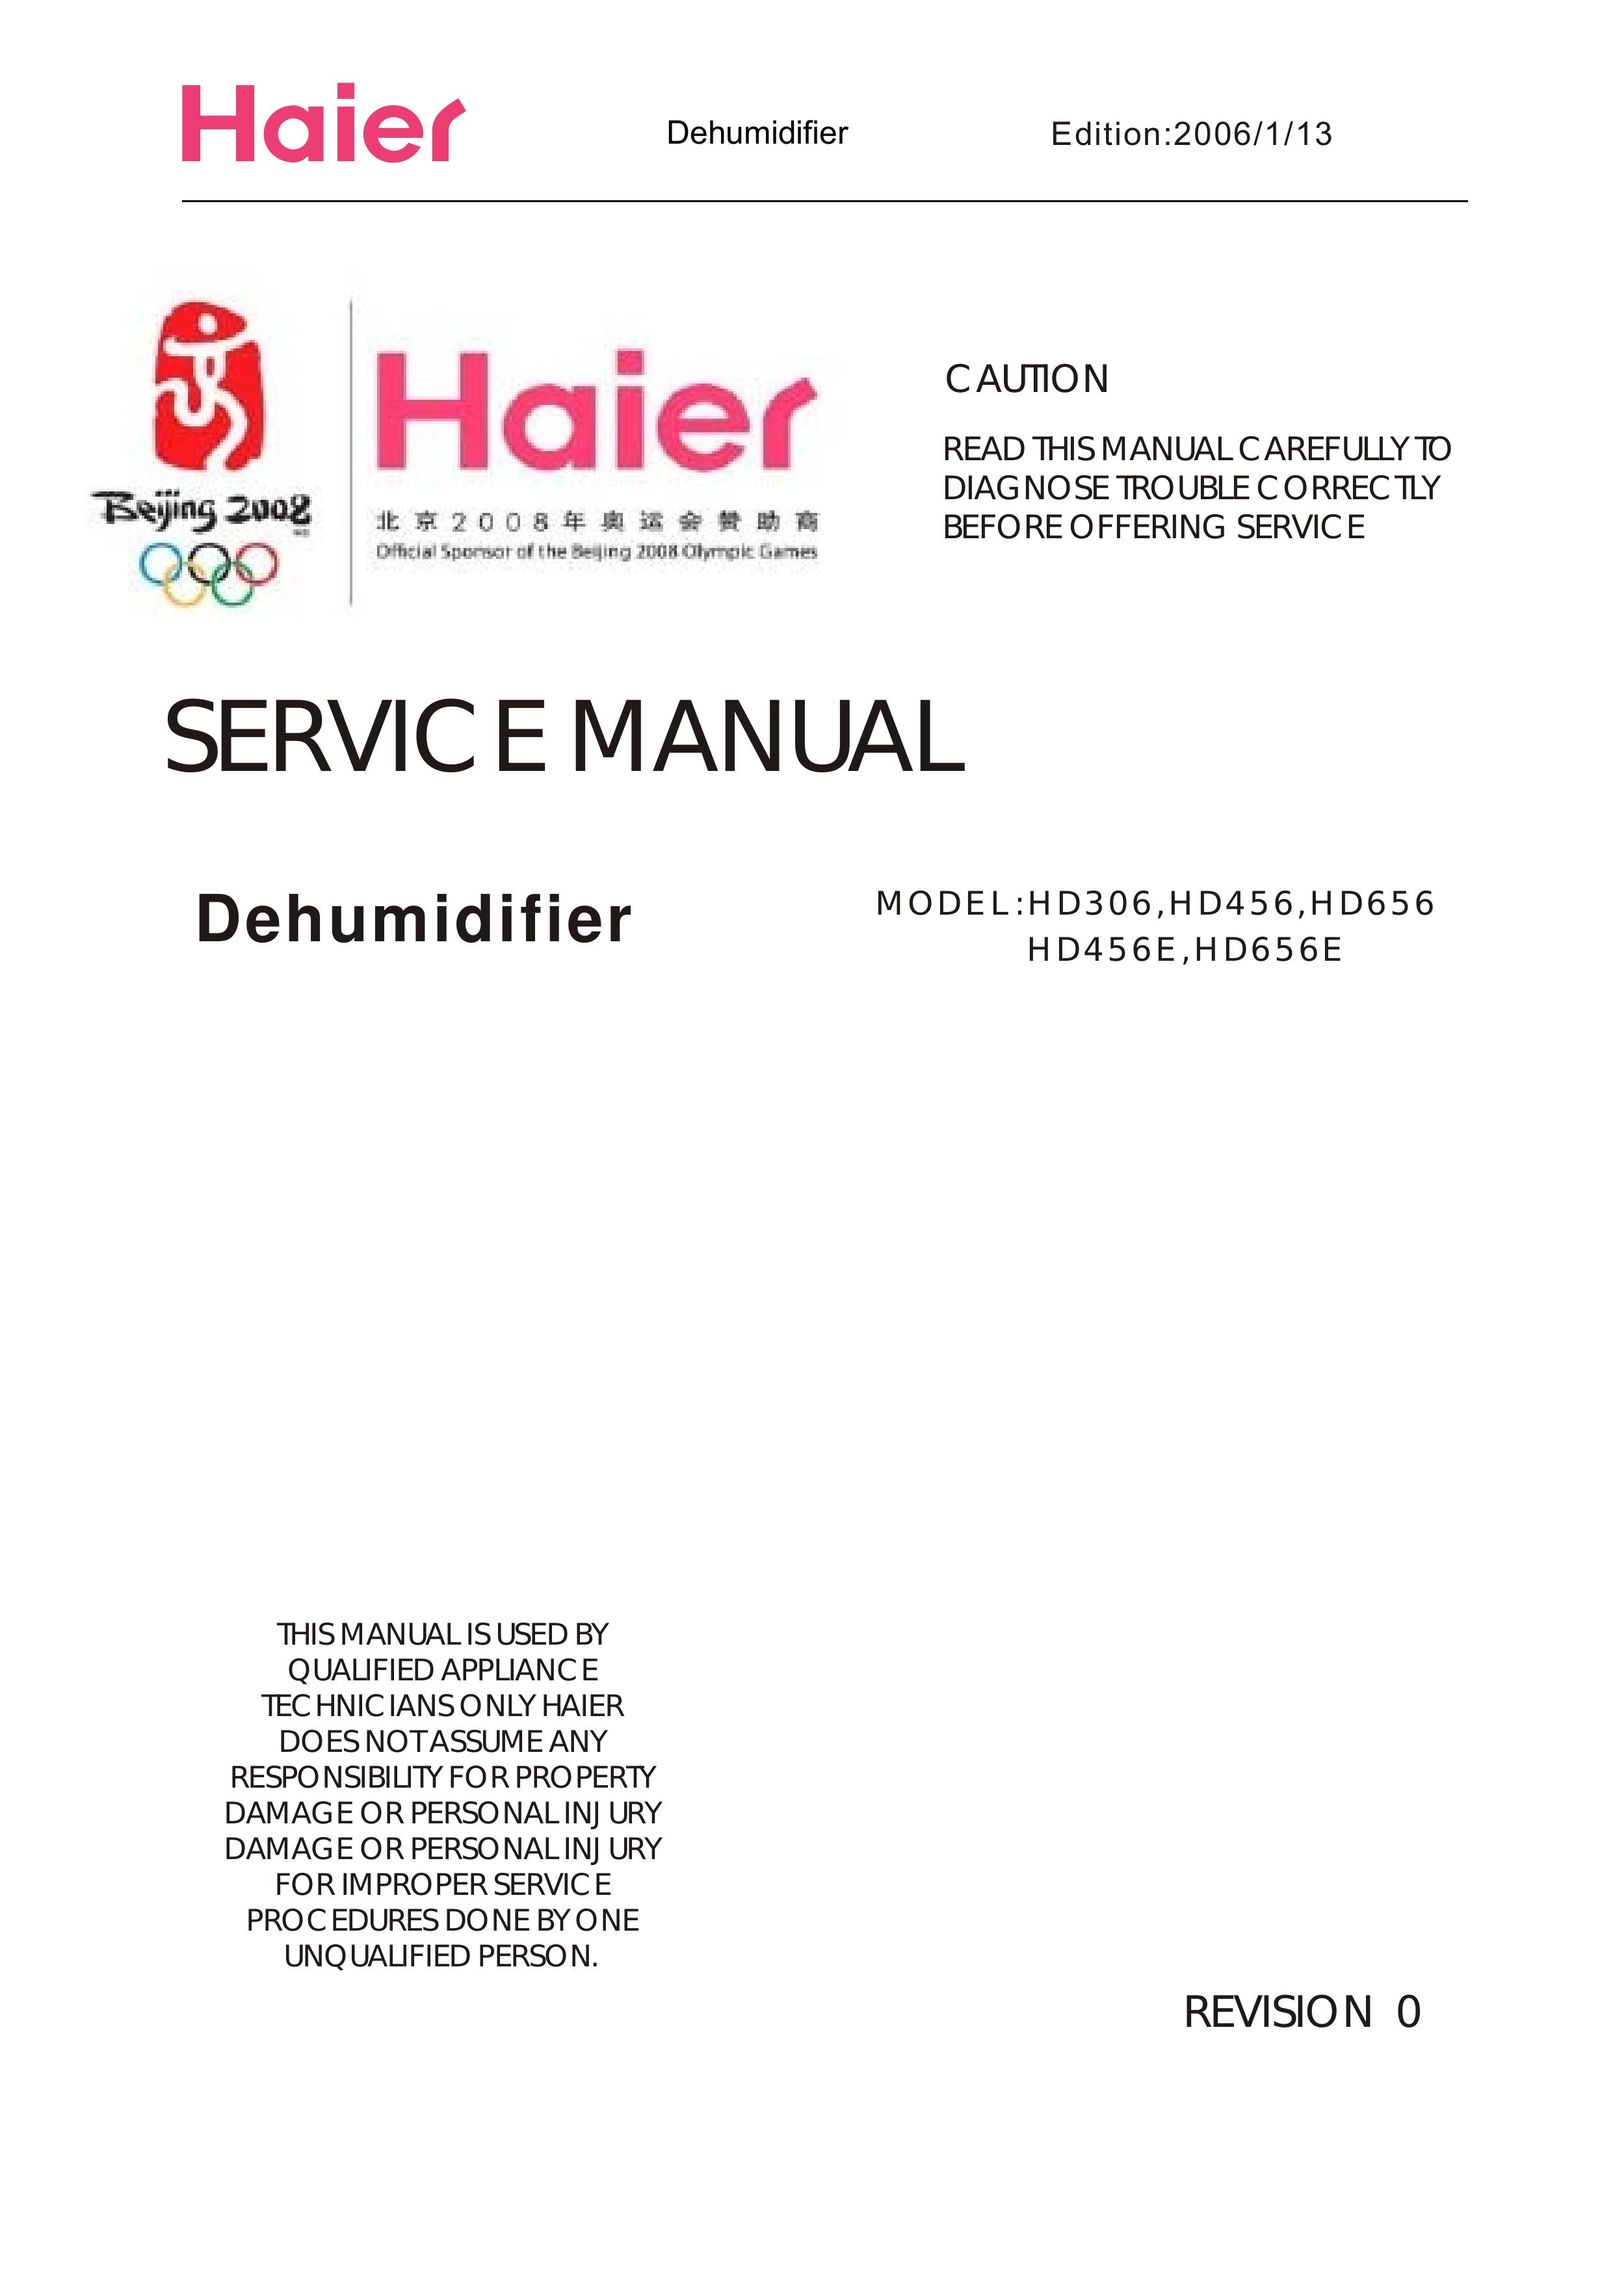 Haier HD456 Dehumidifier User Manual